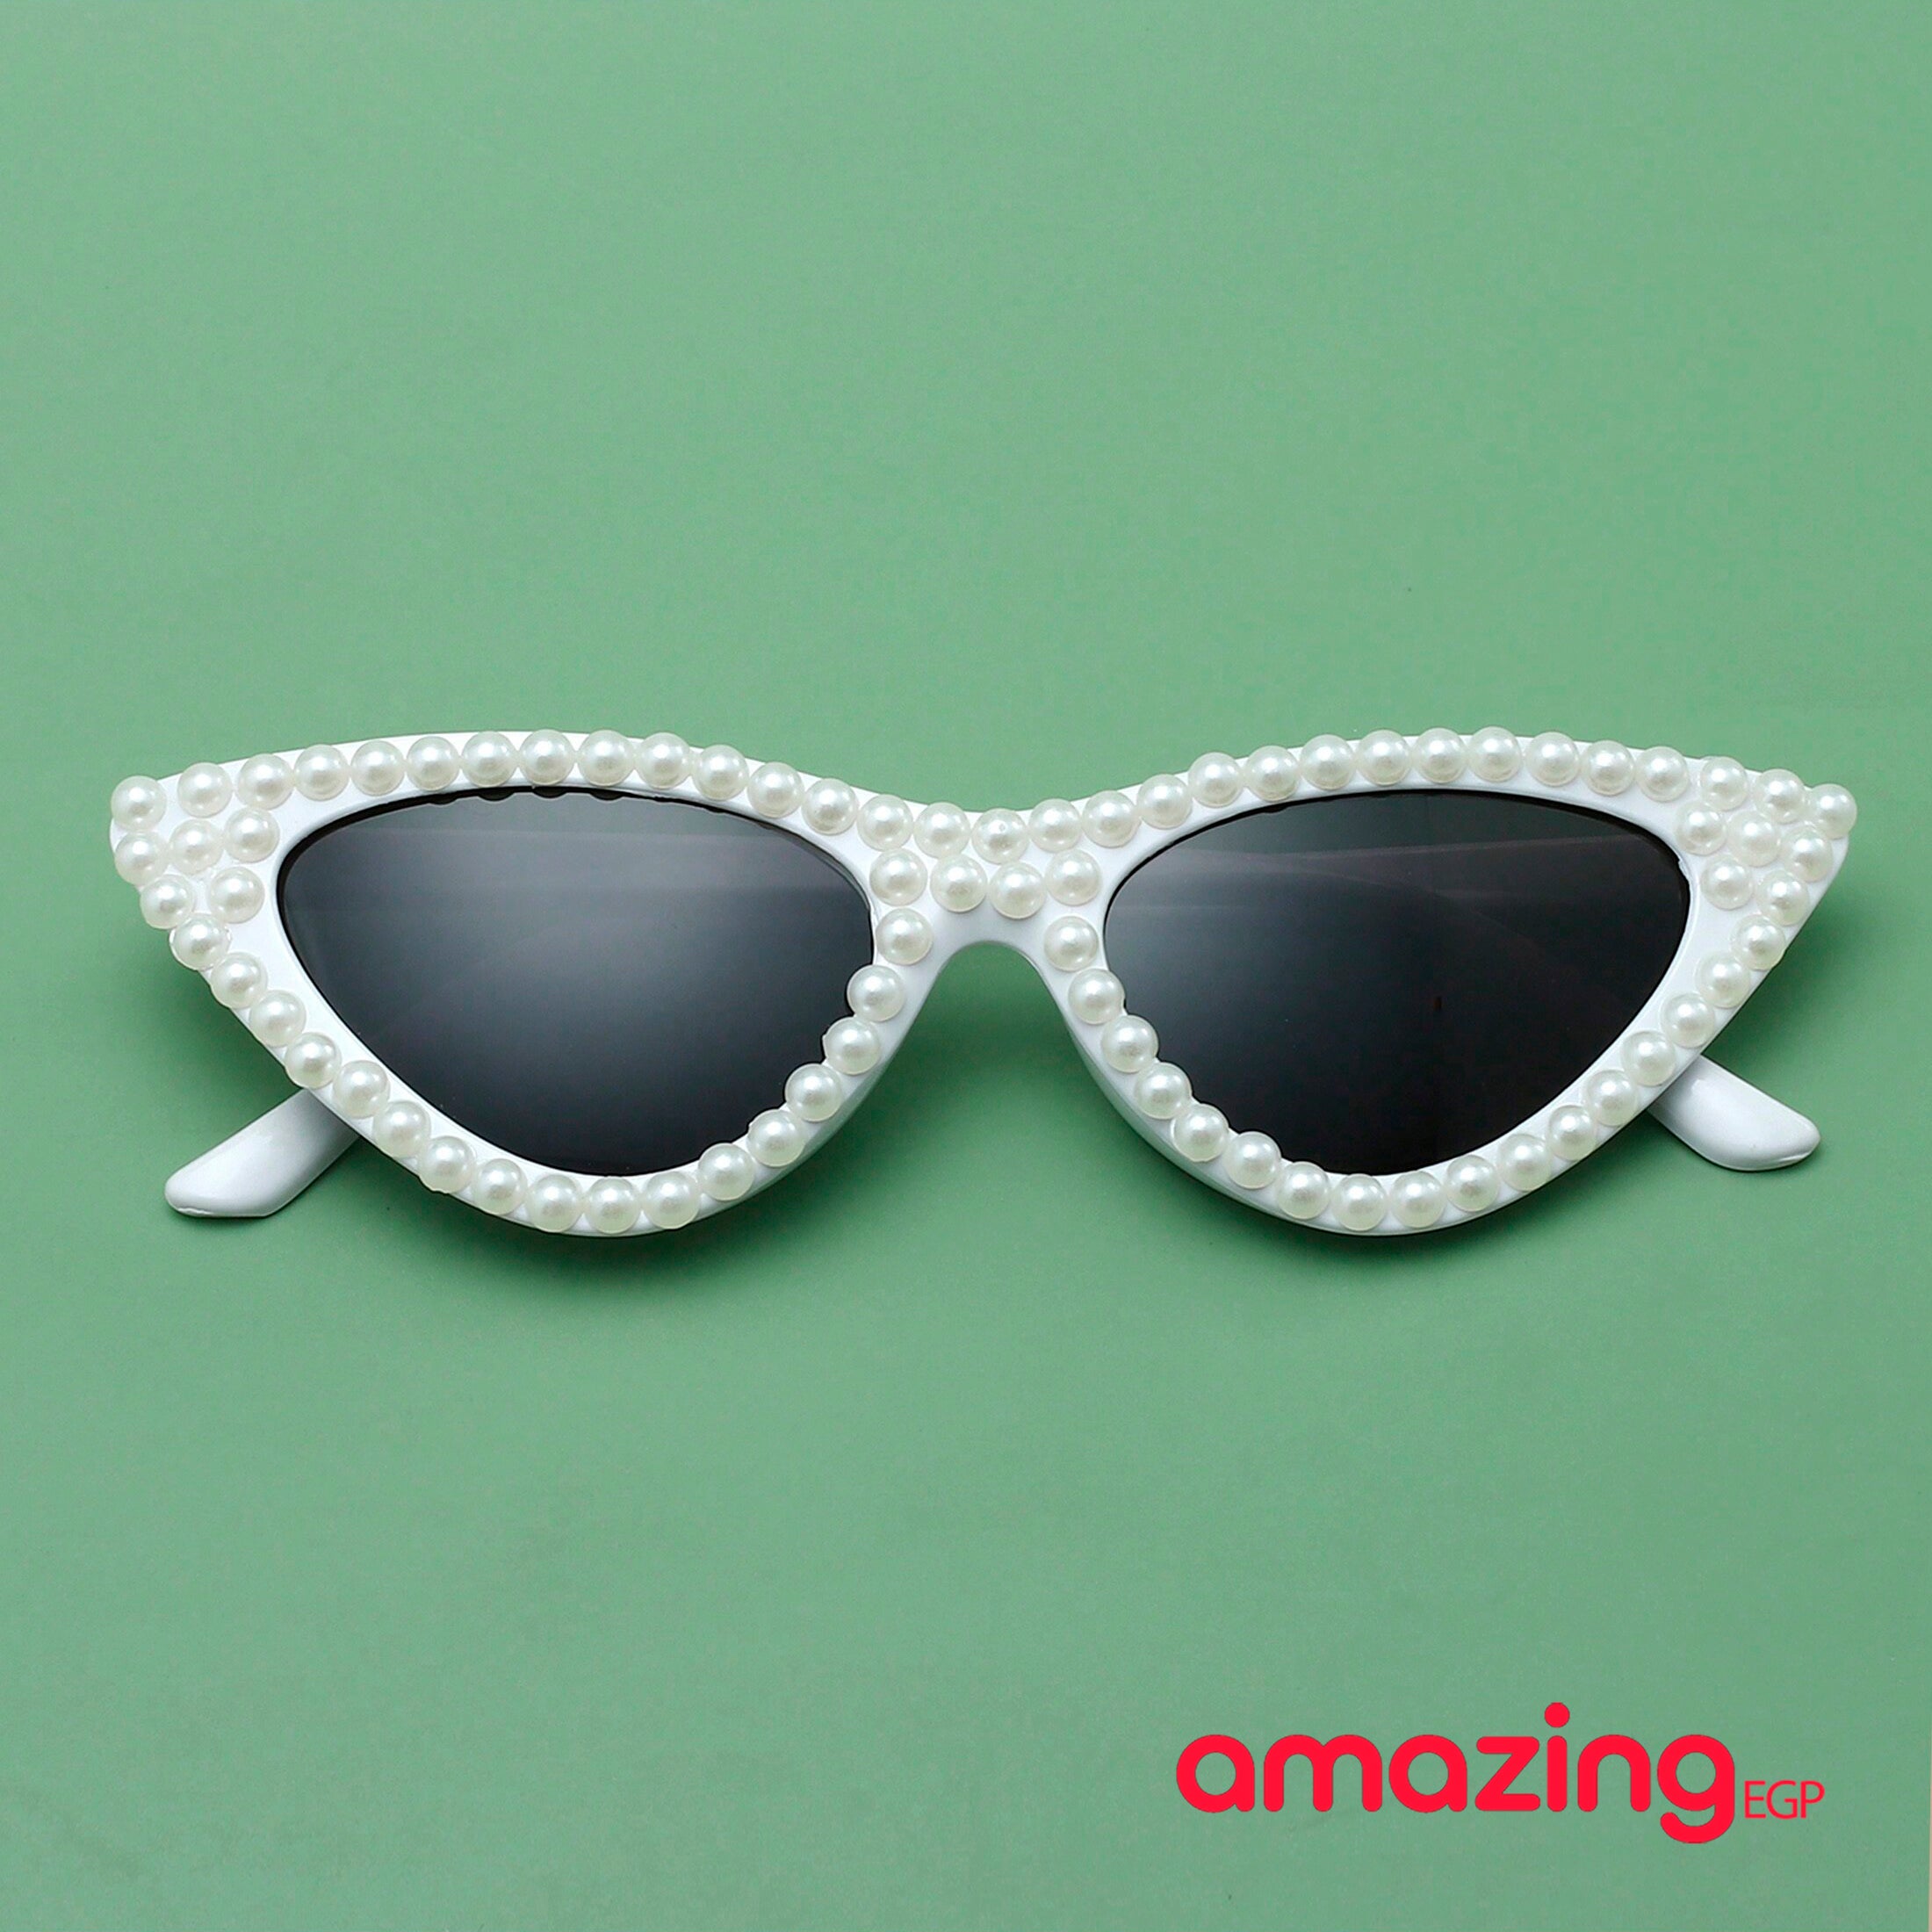 نظارات نساءنظارات شمسية نسائية إطار صغير عين القط الأبيض اللبني مناسبة للاستخدام اليومي عند السفر و مرصعة باللؤلؤ على شكل عين القطة - أبيض